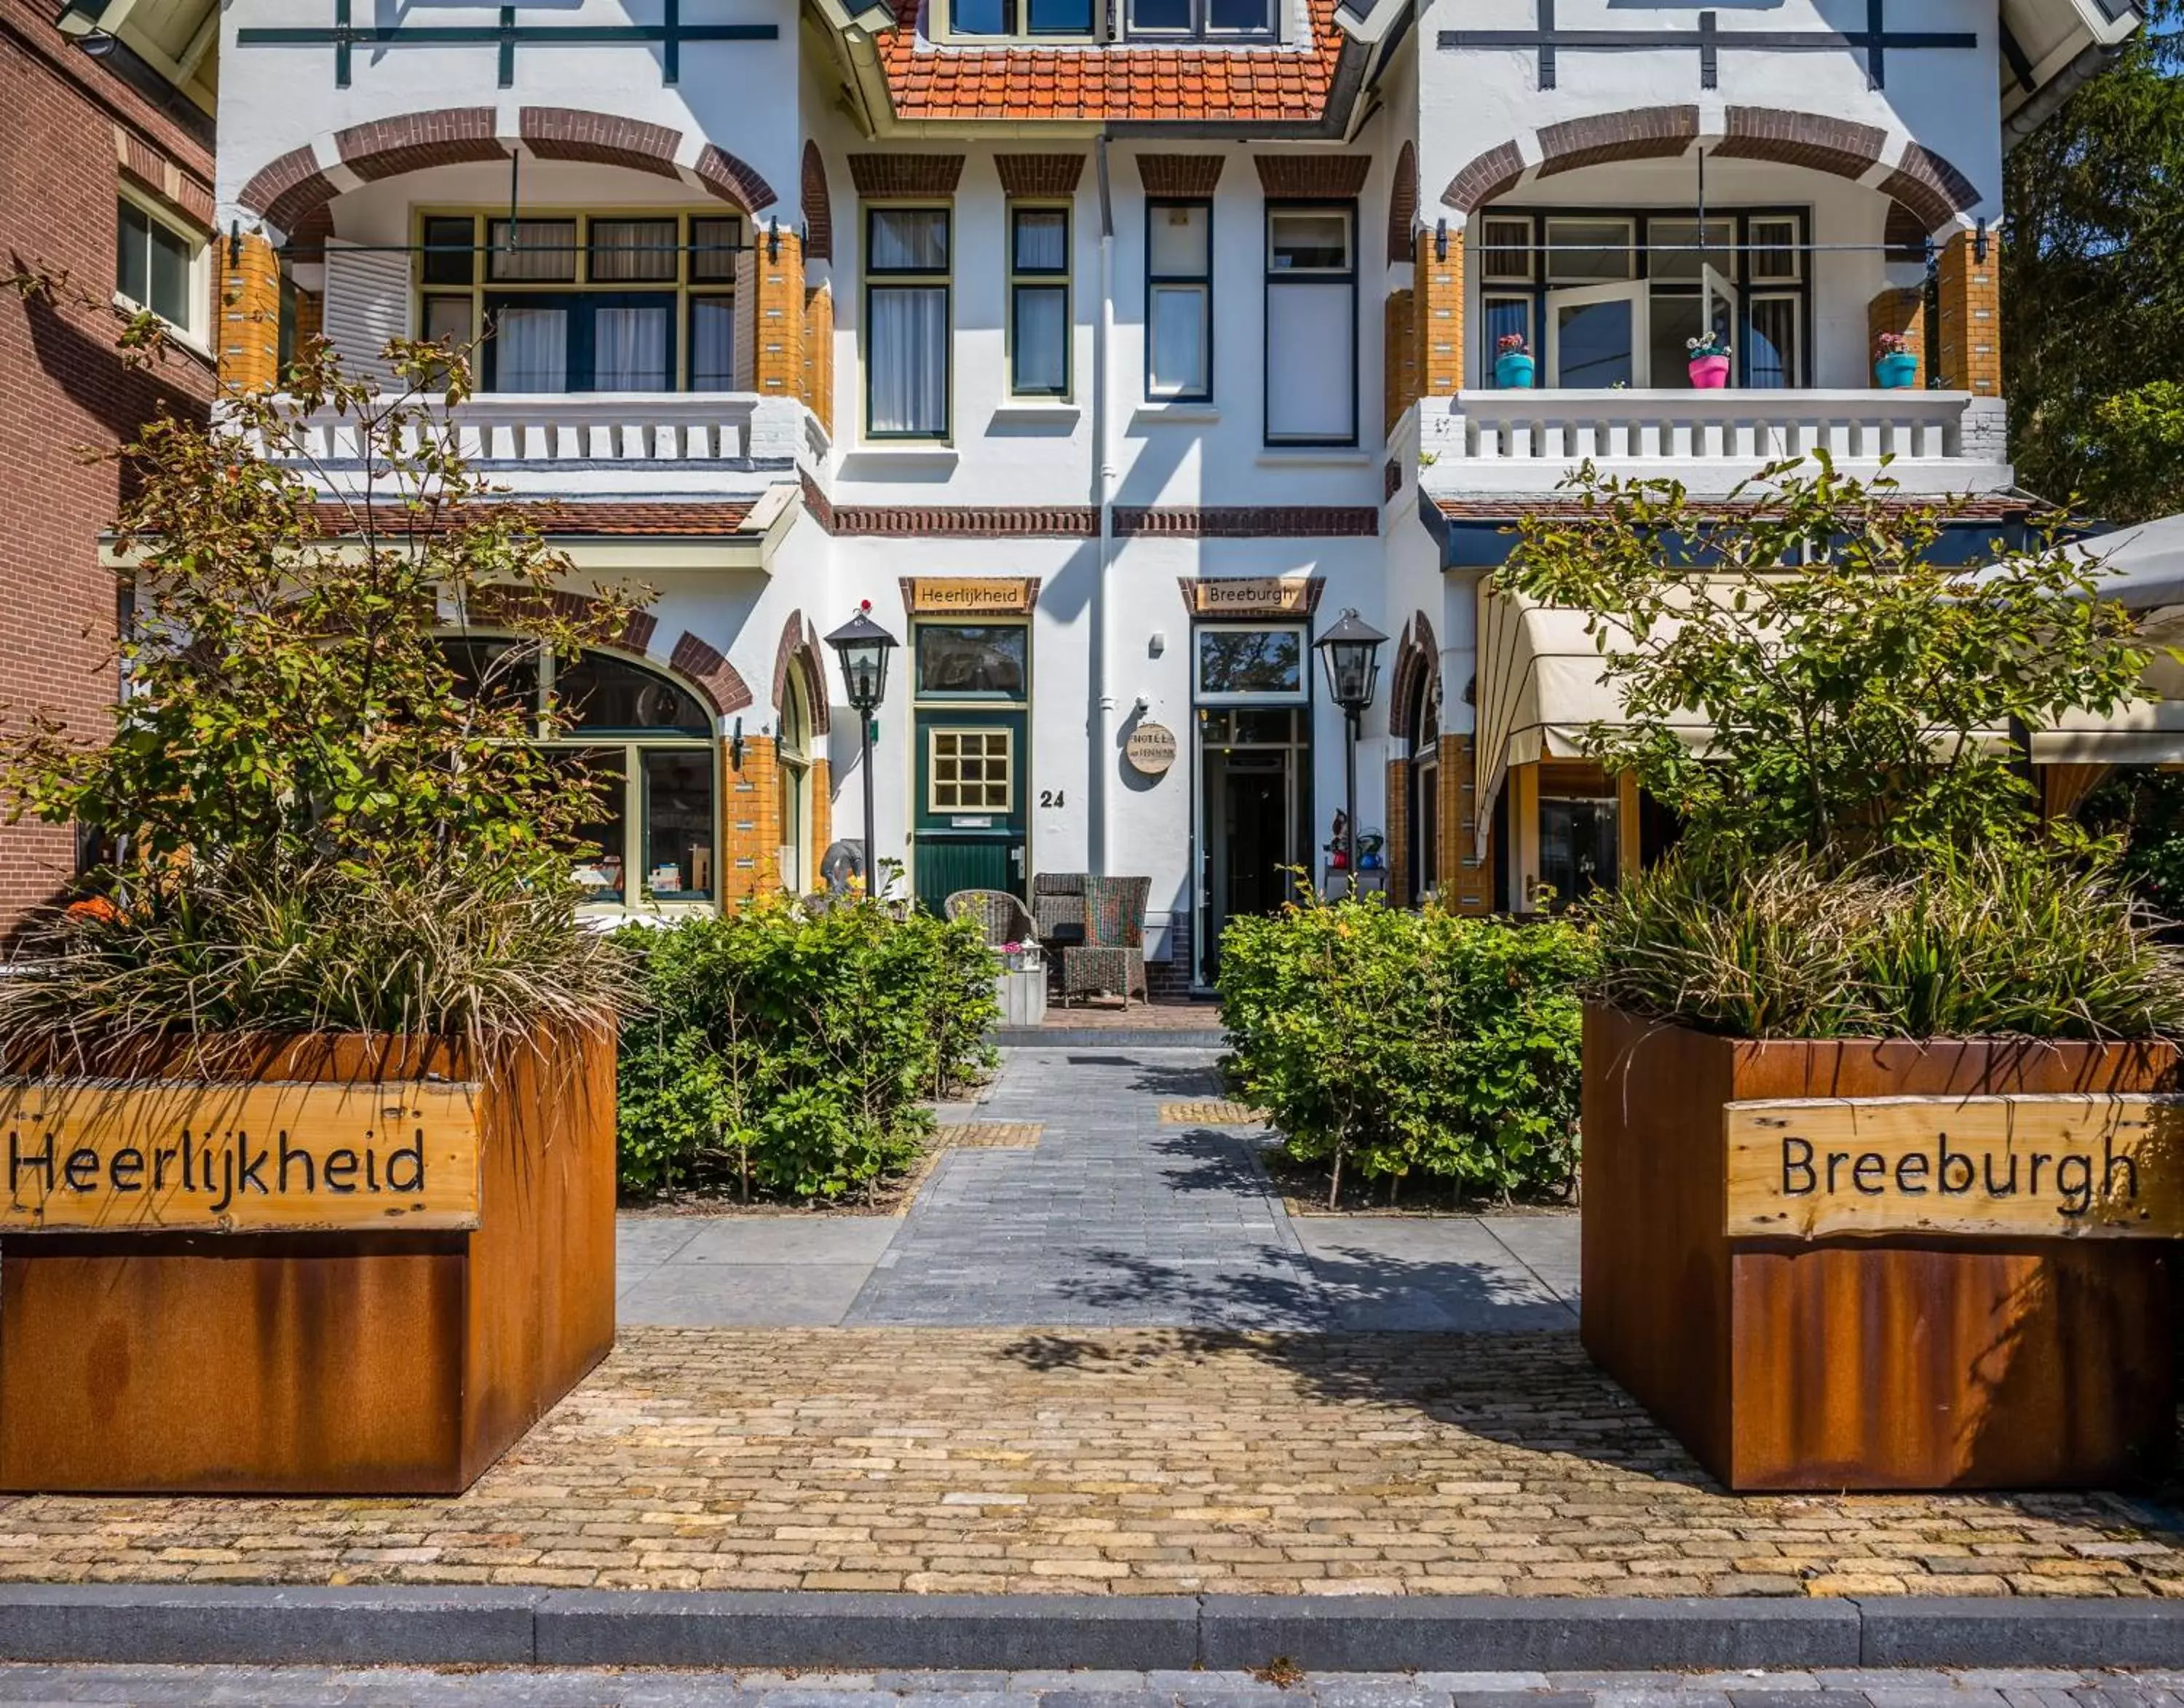 Property building in Hotel Heerlijkheid Bergen